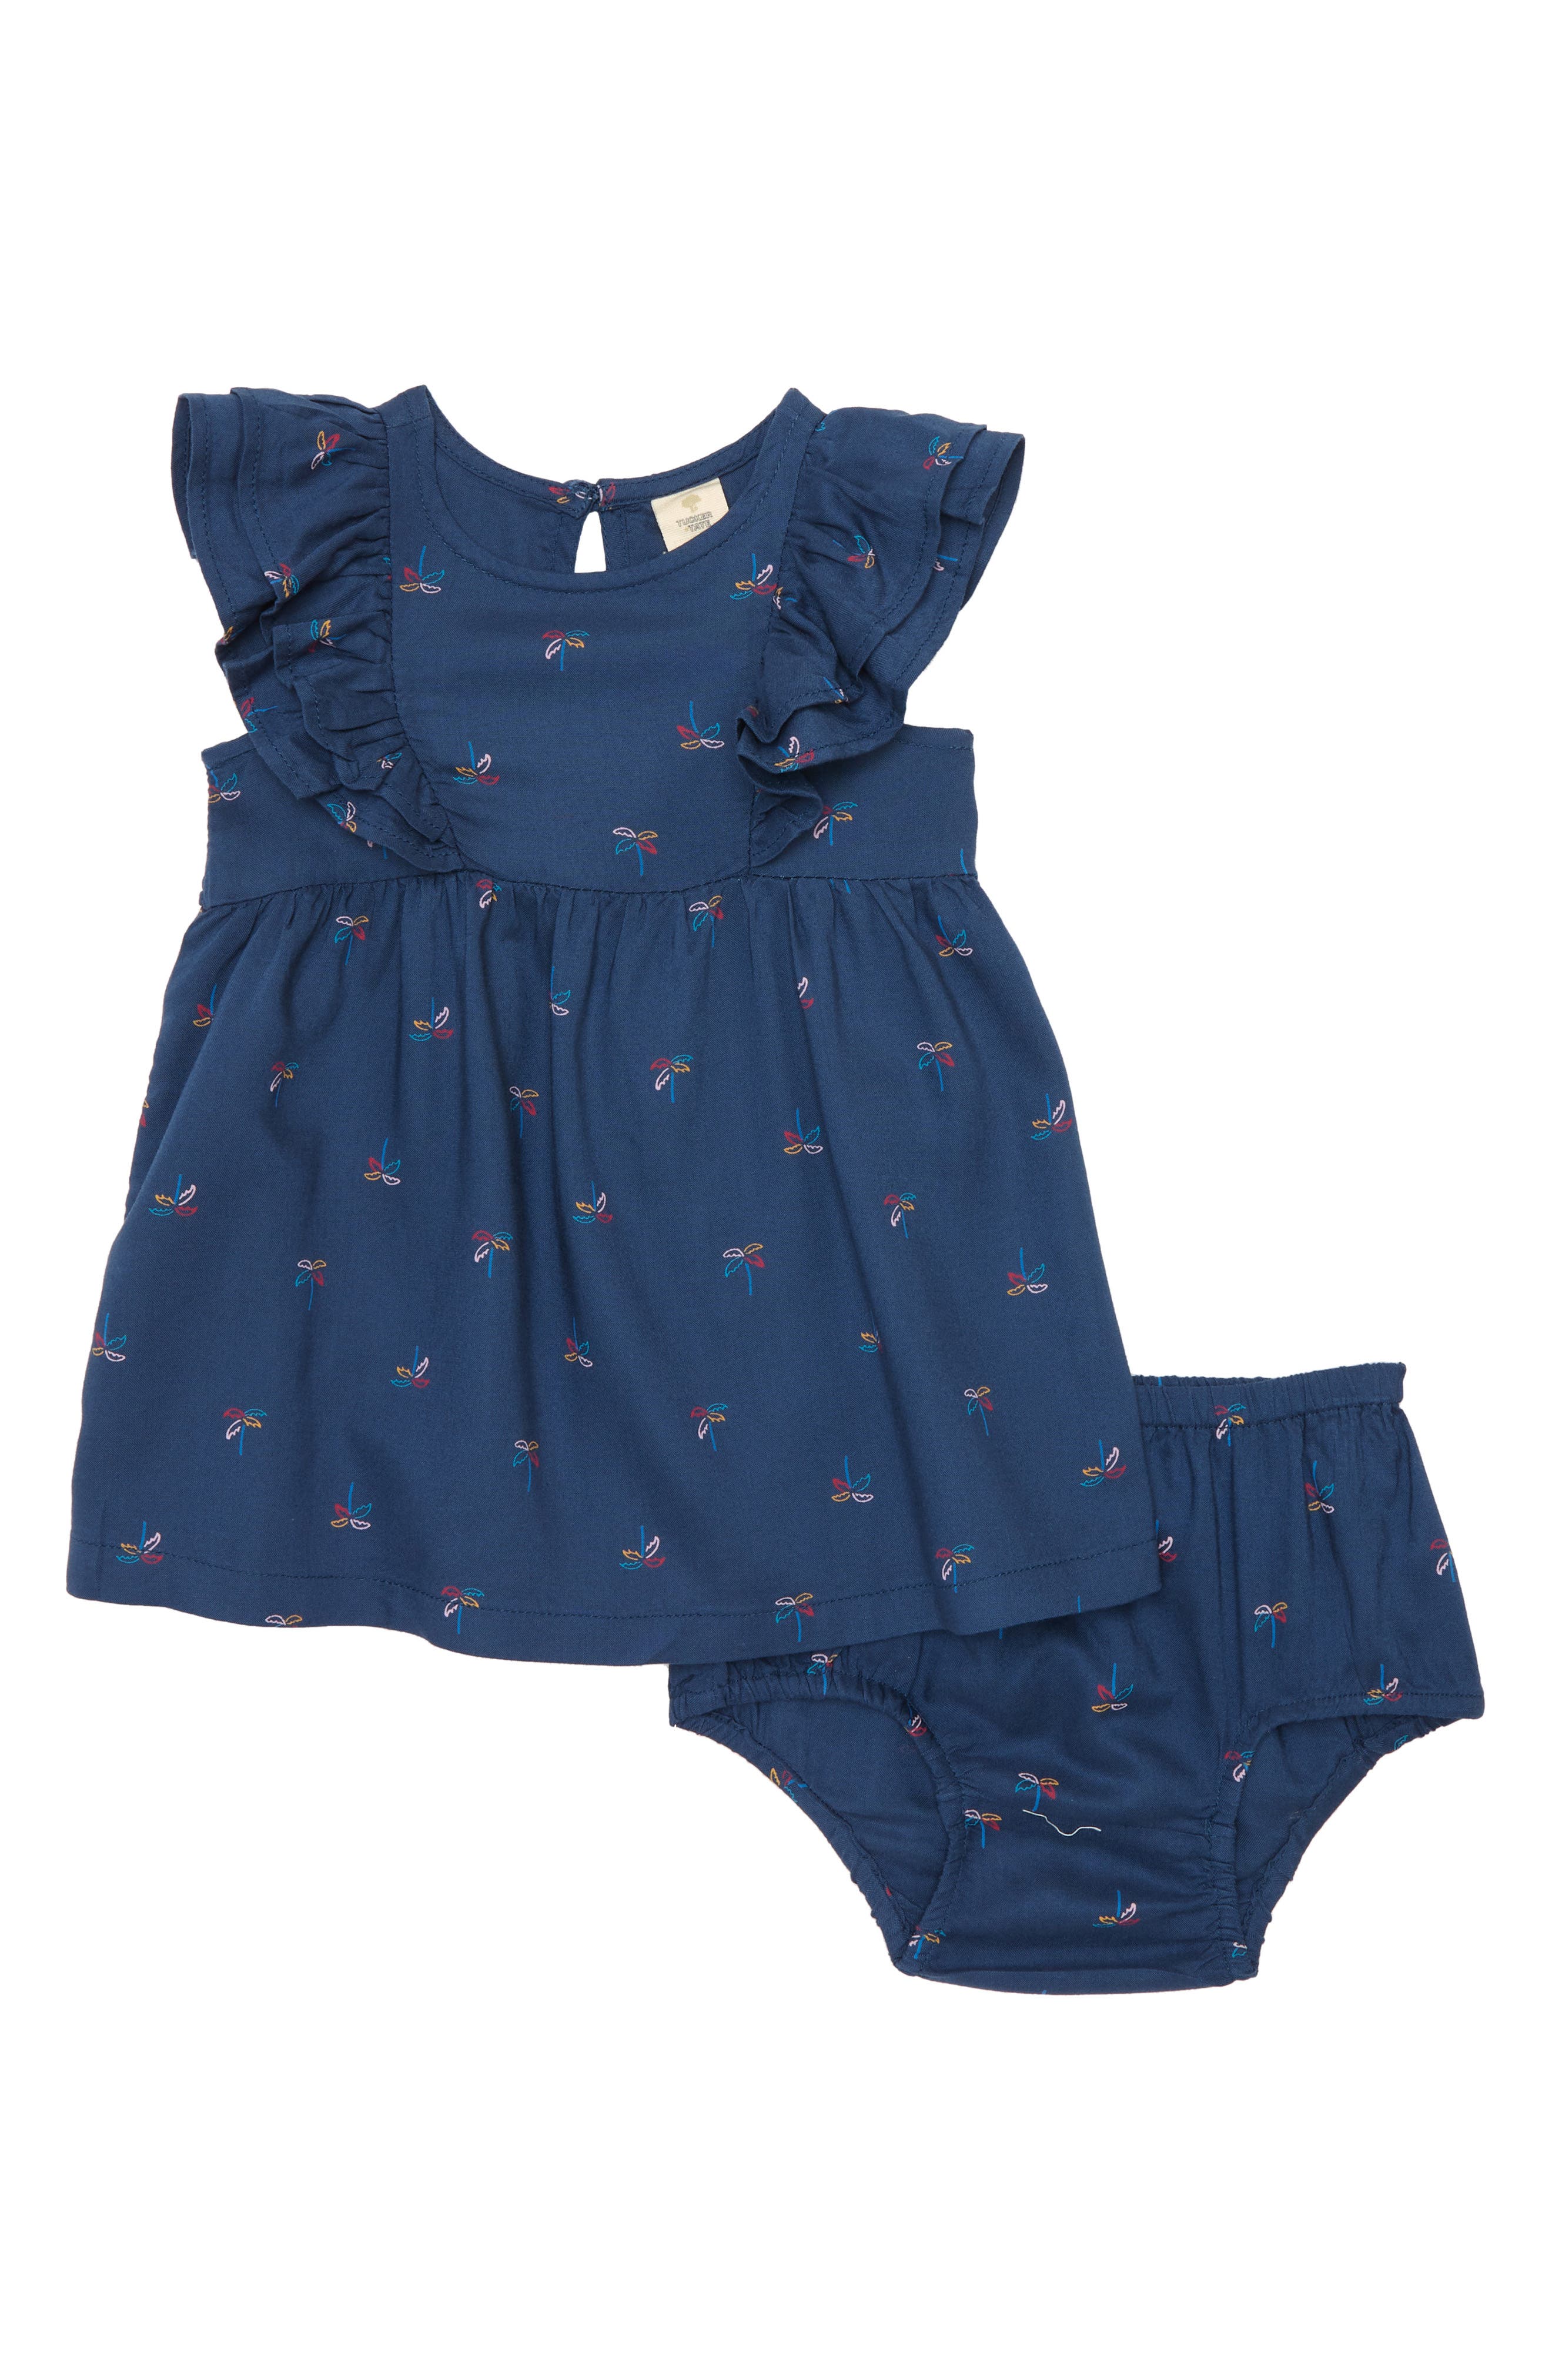 Baby Girls dress NAVY VELVET-Traditional Style Bow Detail-3-6,6-12,12-18-SWEET!!